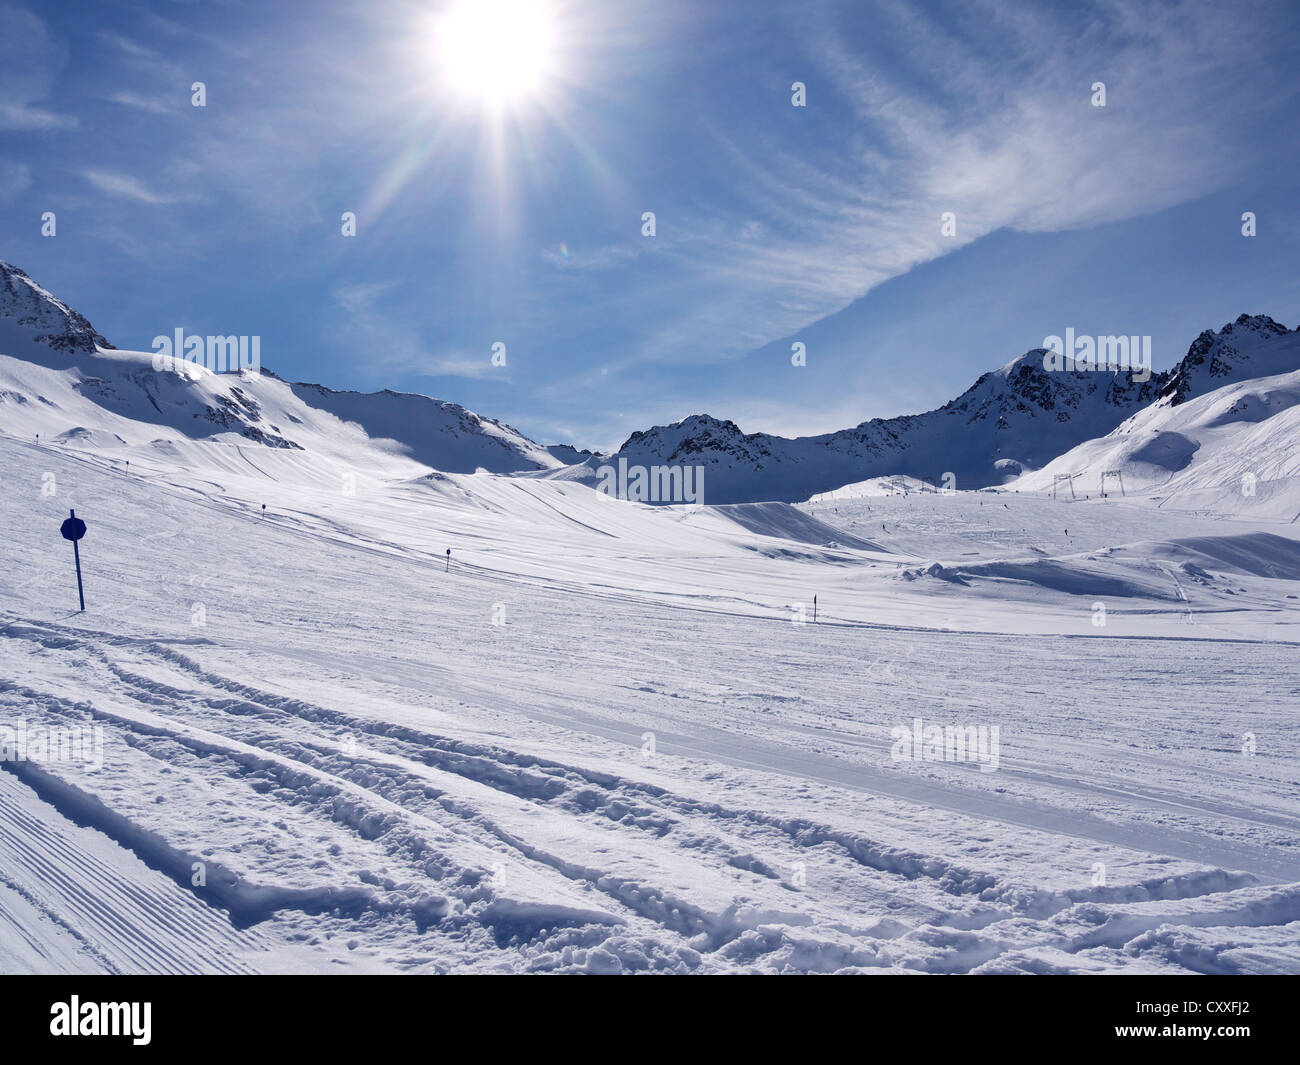 Pistes de ski, le domaine skiable du glacier de Kaunertal, Kaunertal, Feichten, Tyrol, Autriche, Europe Banque D'Images